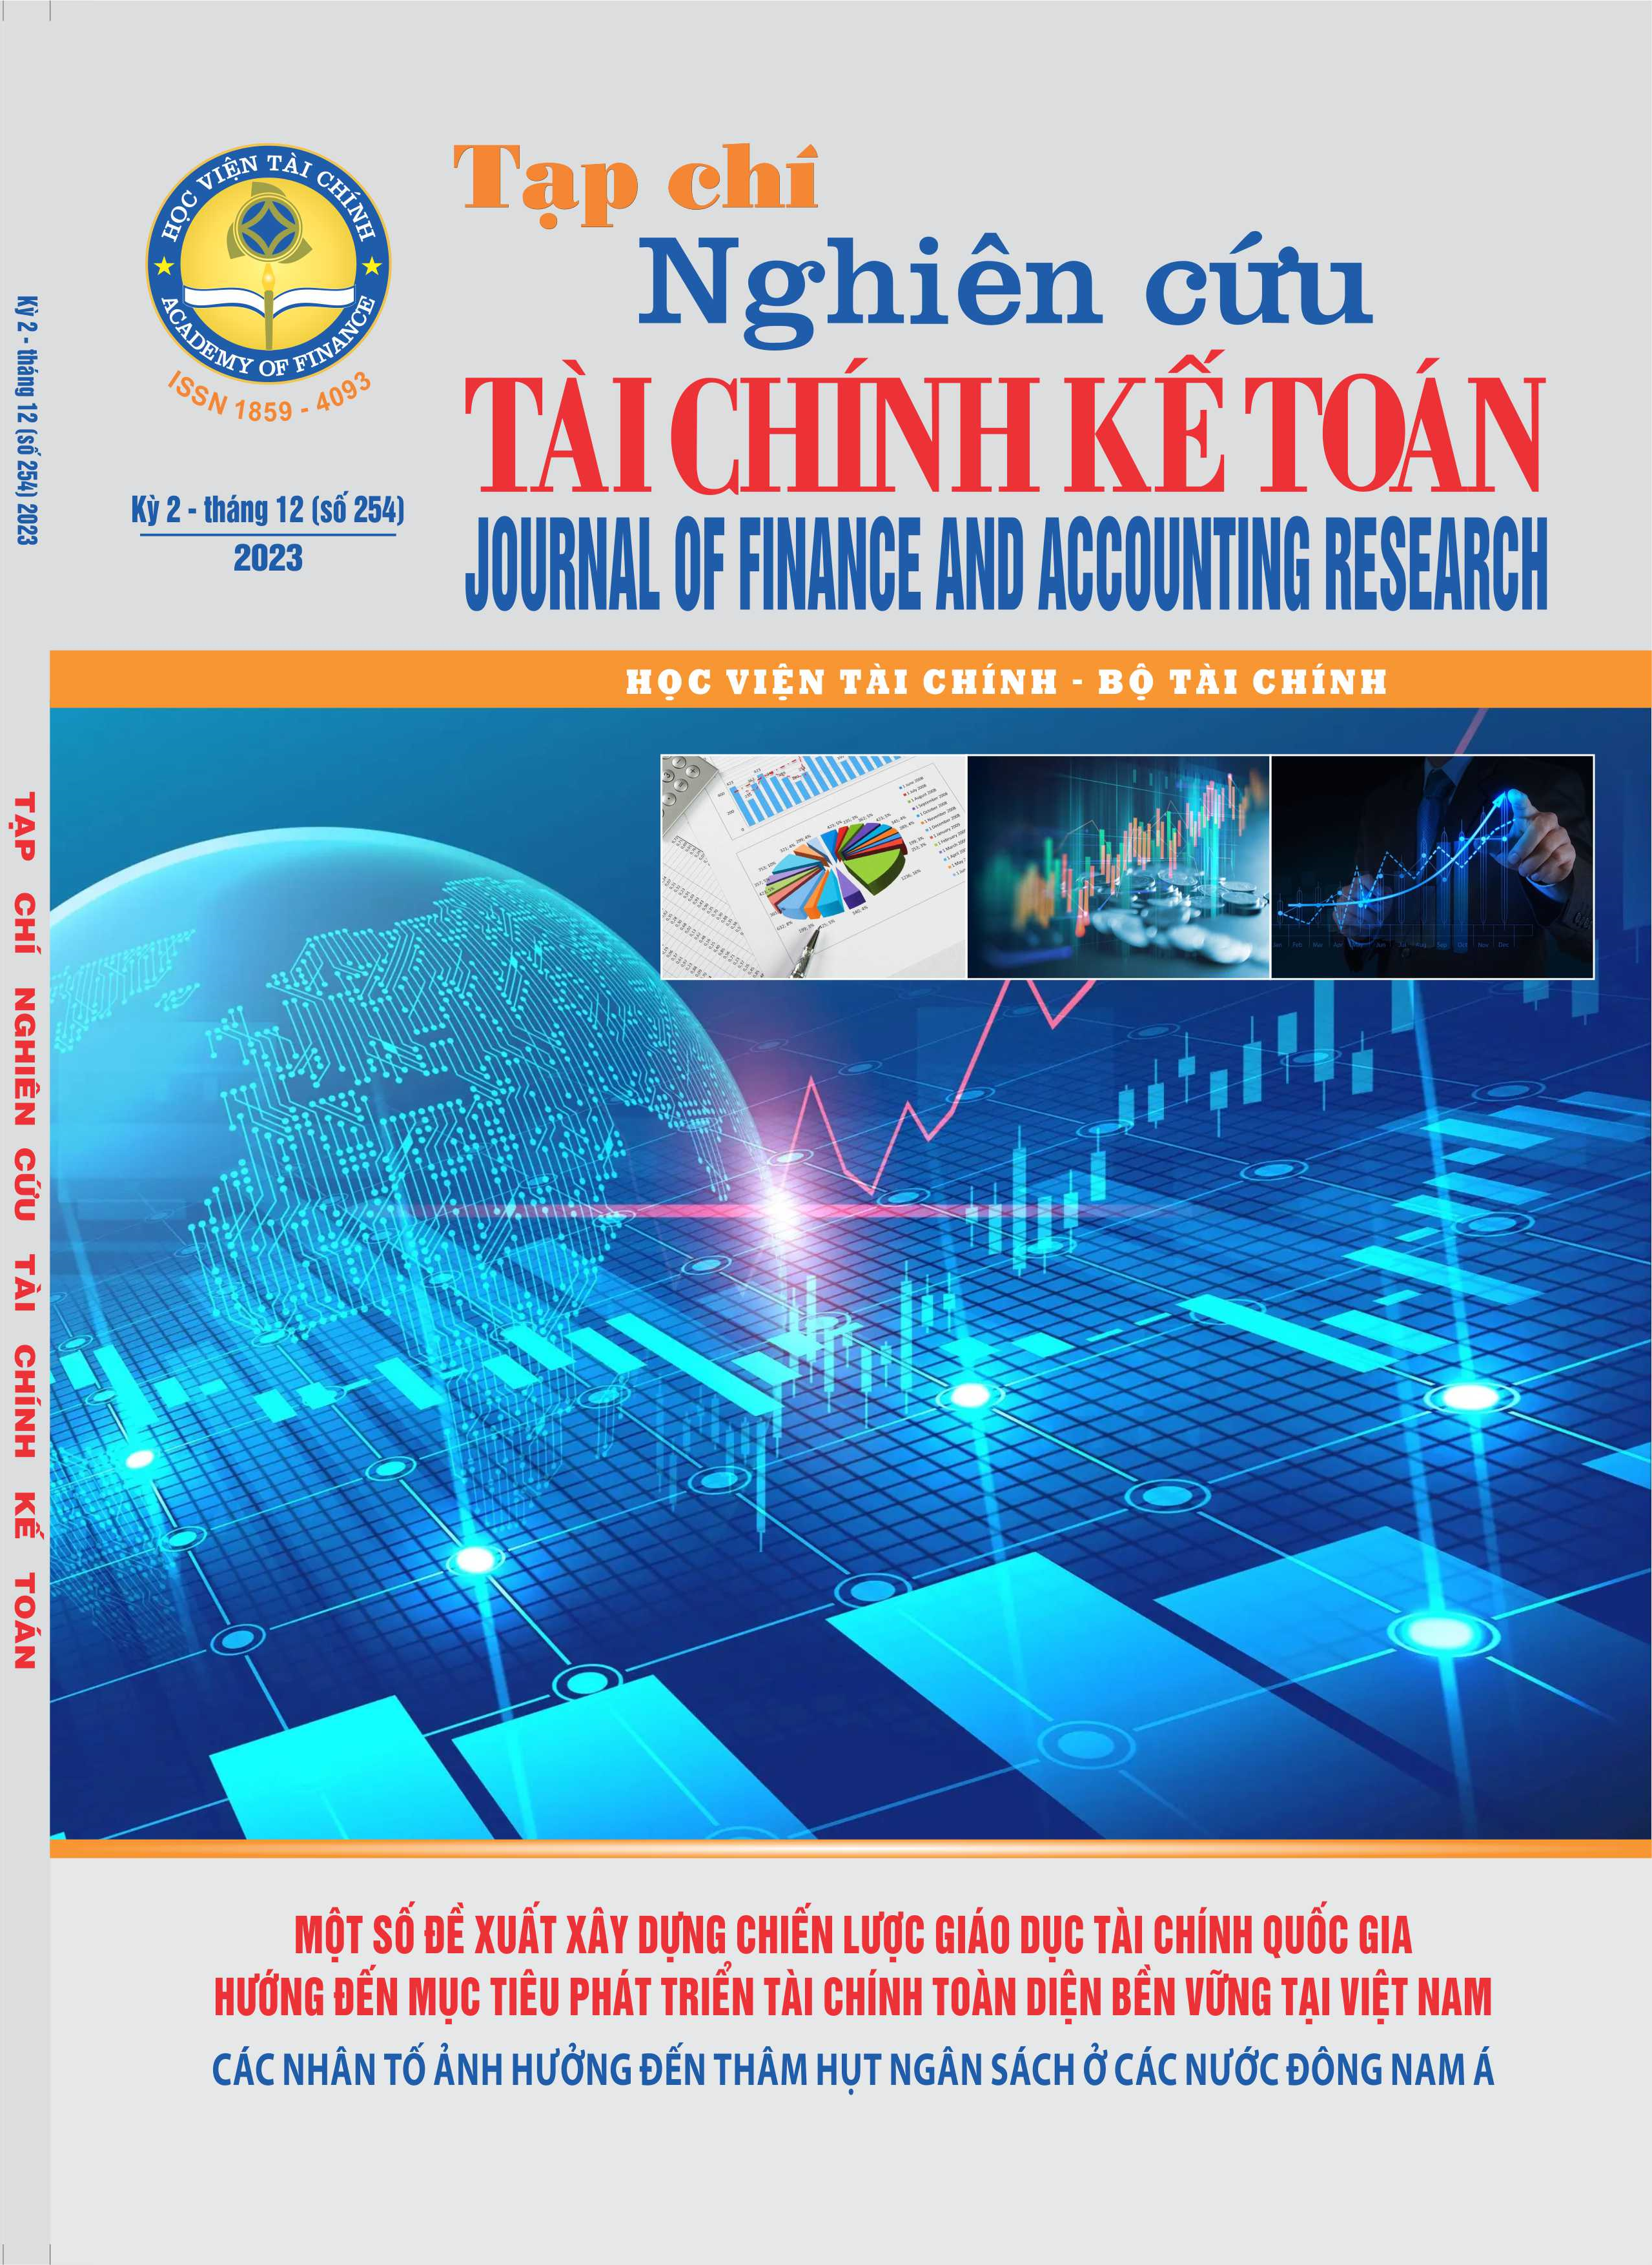 Tạp chí Nghiên cứu Tài chính Kế toán (Kỳ 2 - T12 (254) 2023)